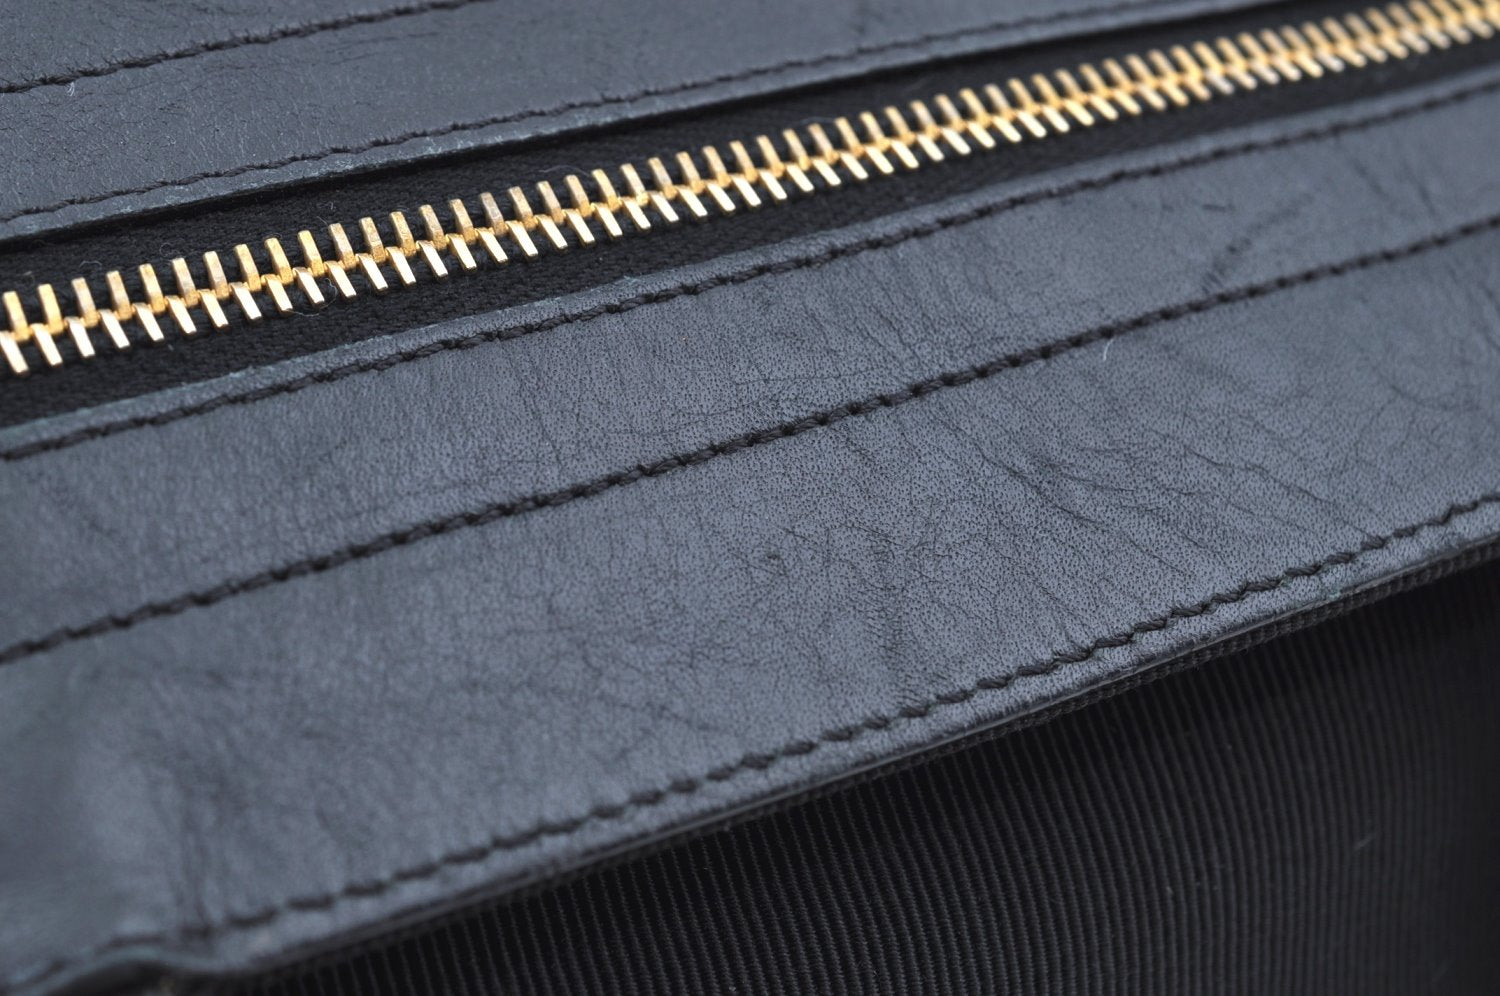 Authentic Salvatore Ferragamo Nylon Leather Hand Bag Purse Black SF K4542